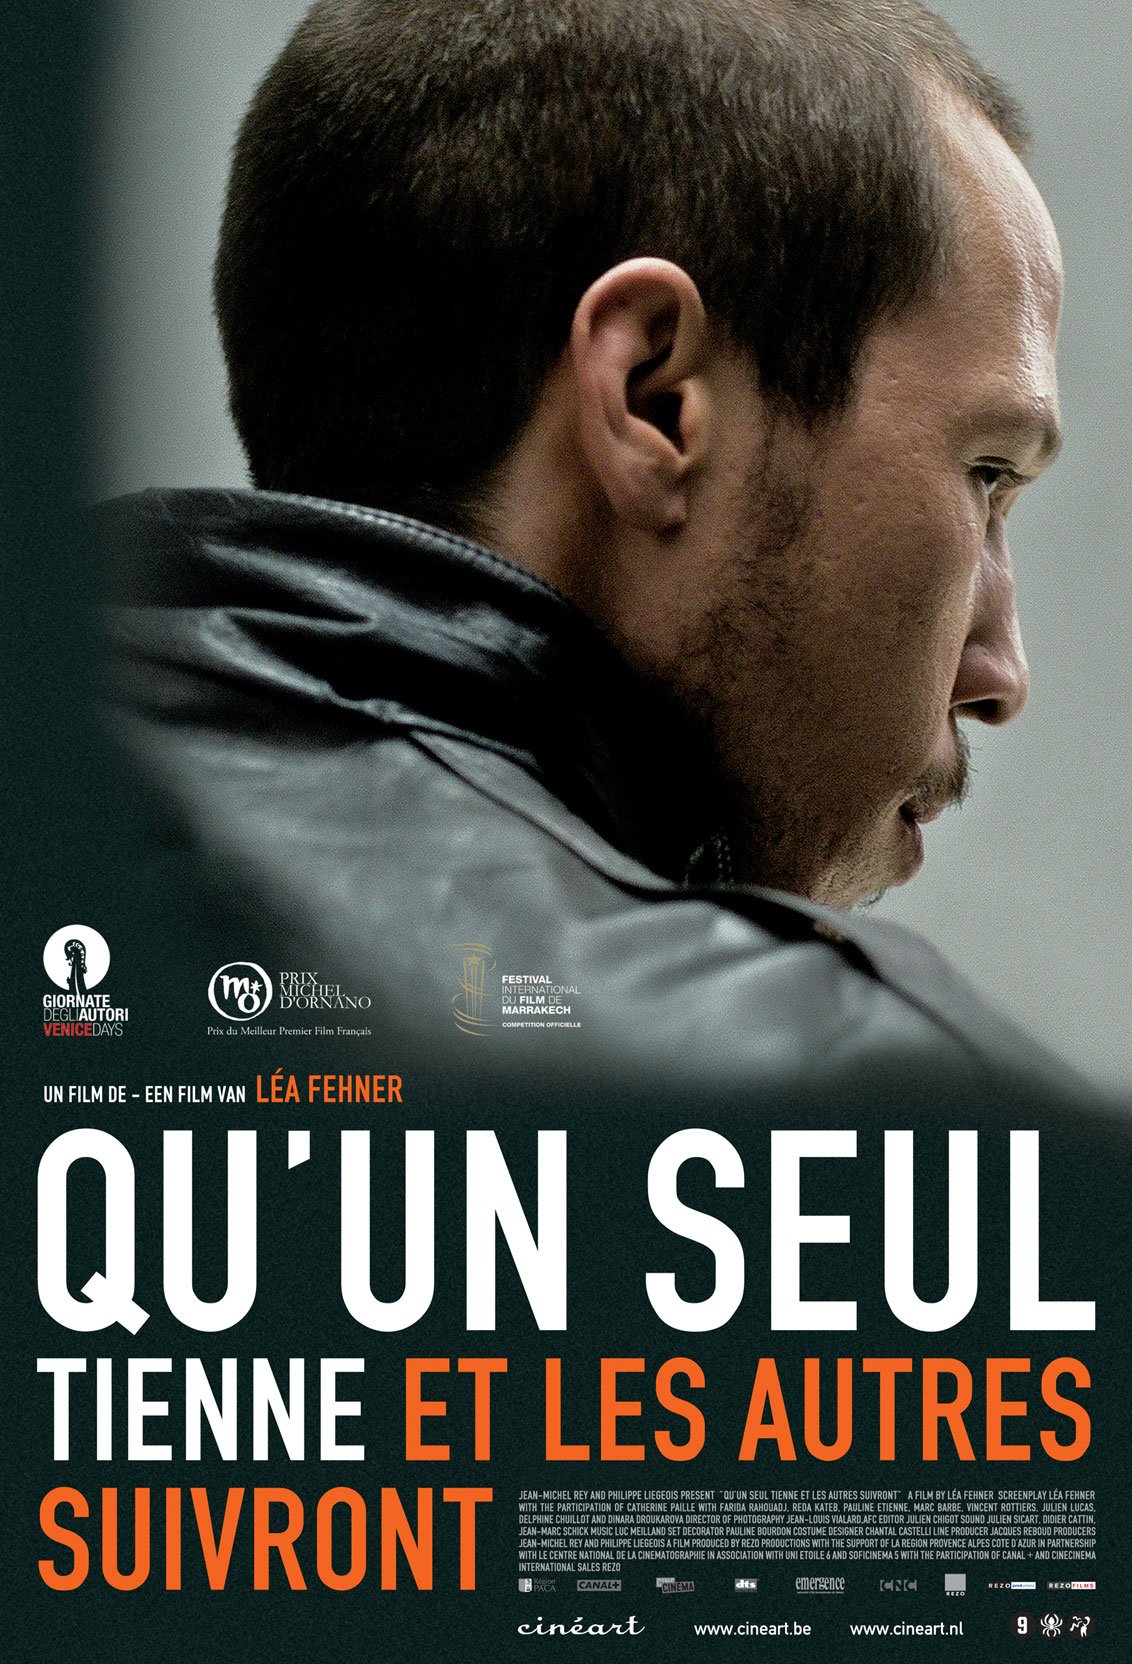 Poster of the movie Qu'un seul tienne et les autres suivront